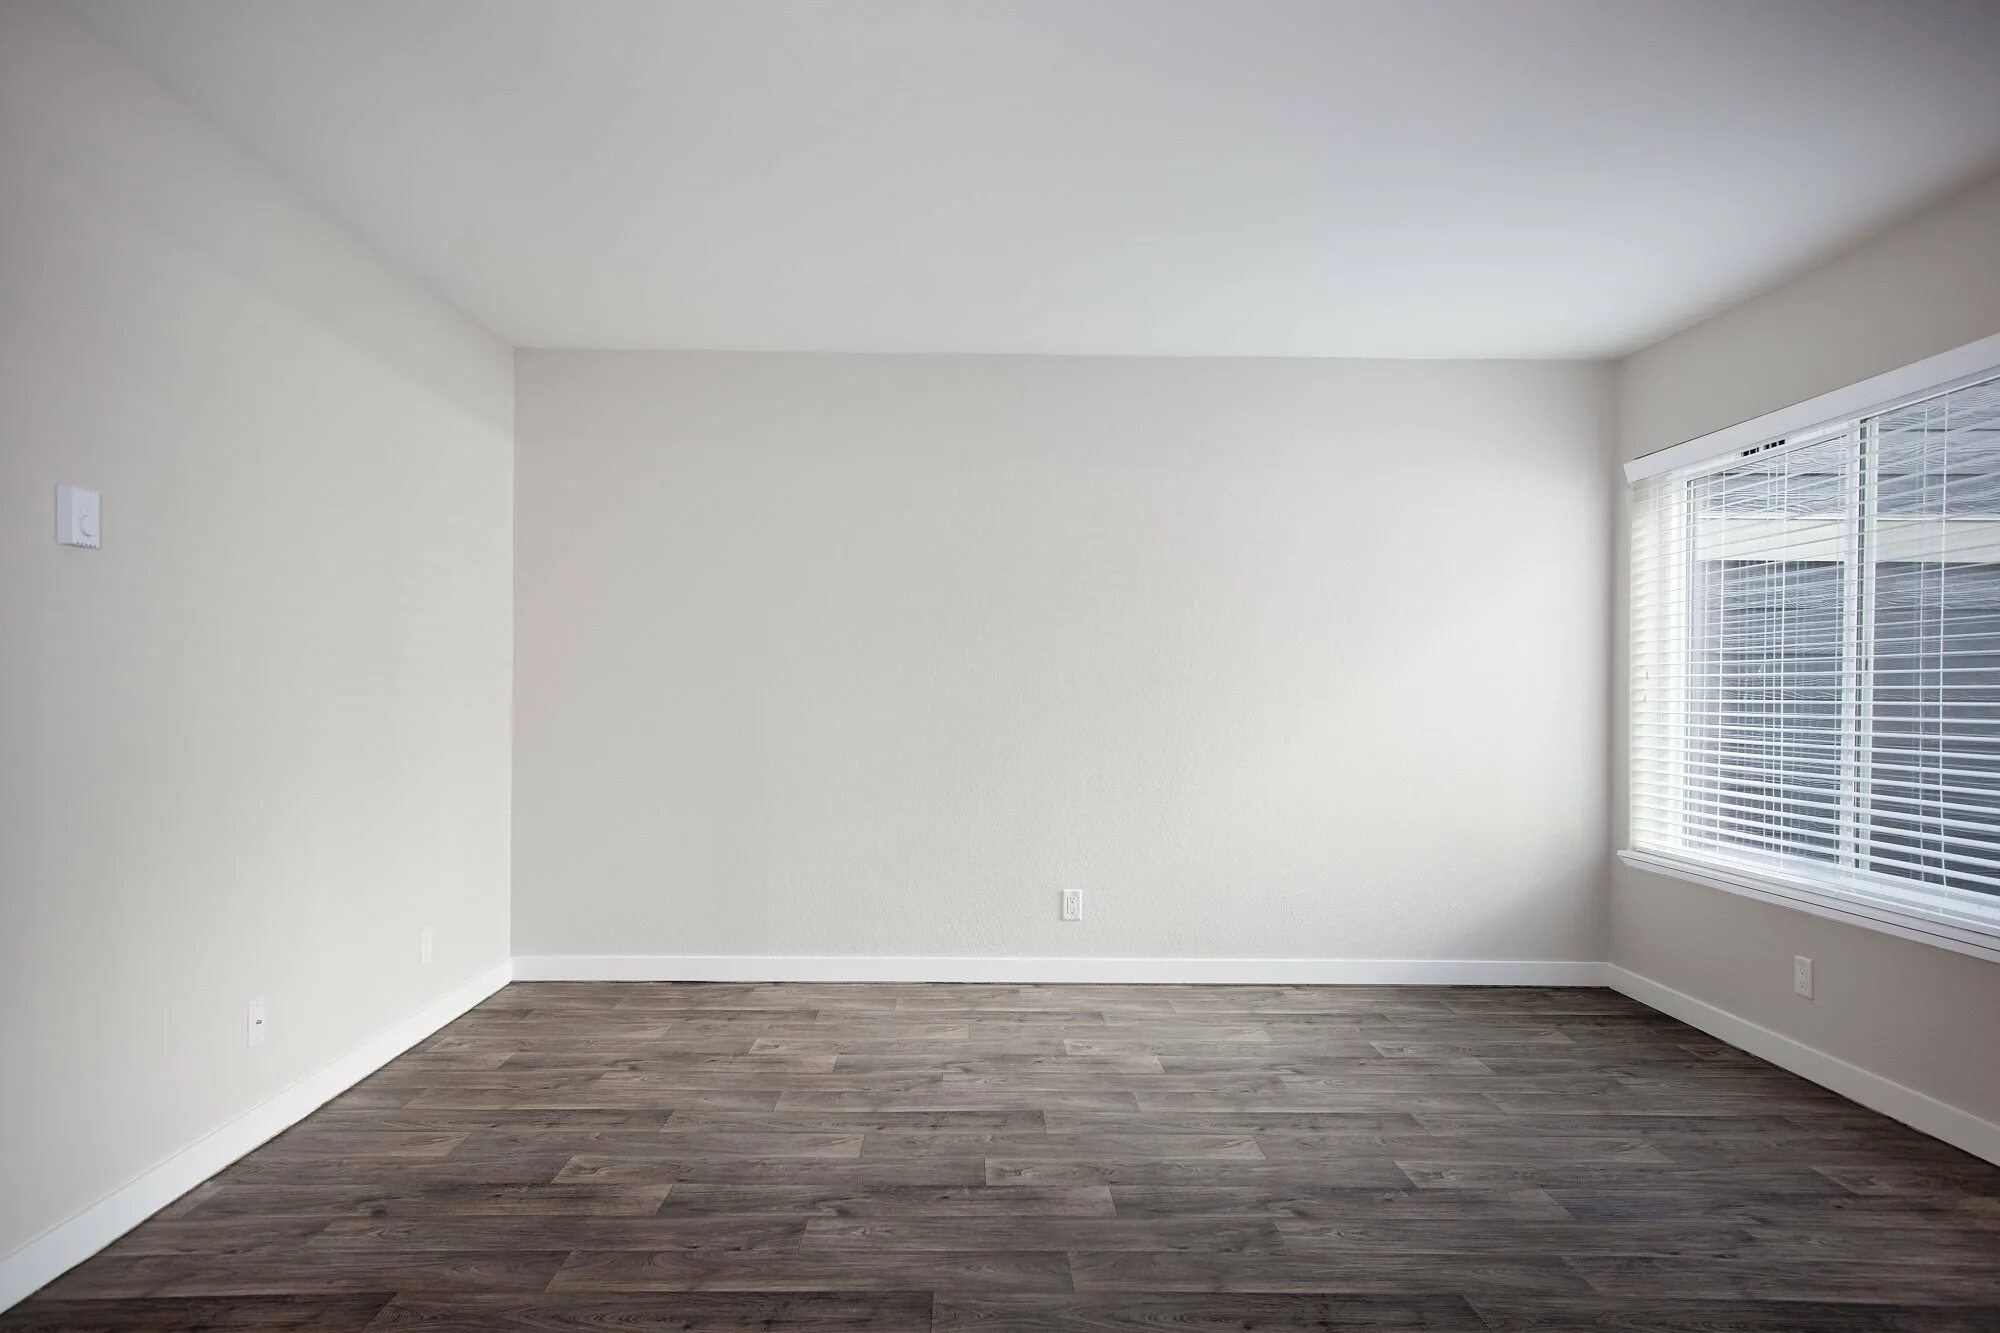 Картинки белого пола. Пустая комната. Комната без мебели. Интерьер без мебели. Угол комнаты.